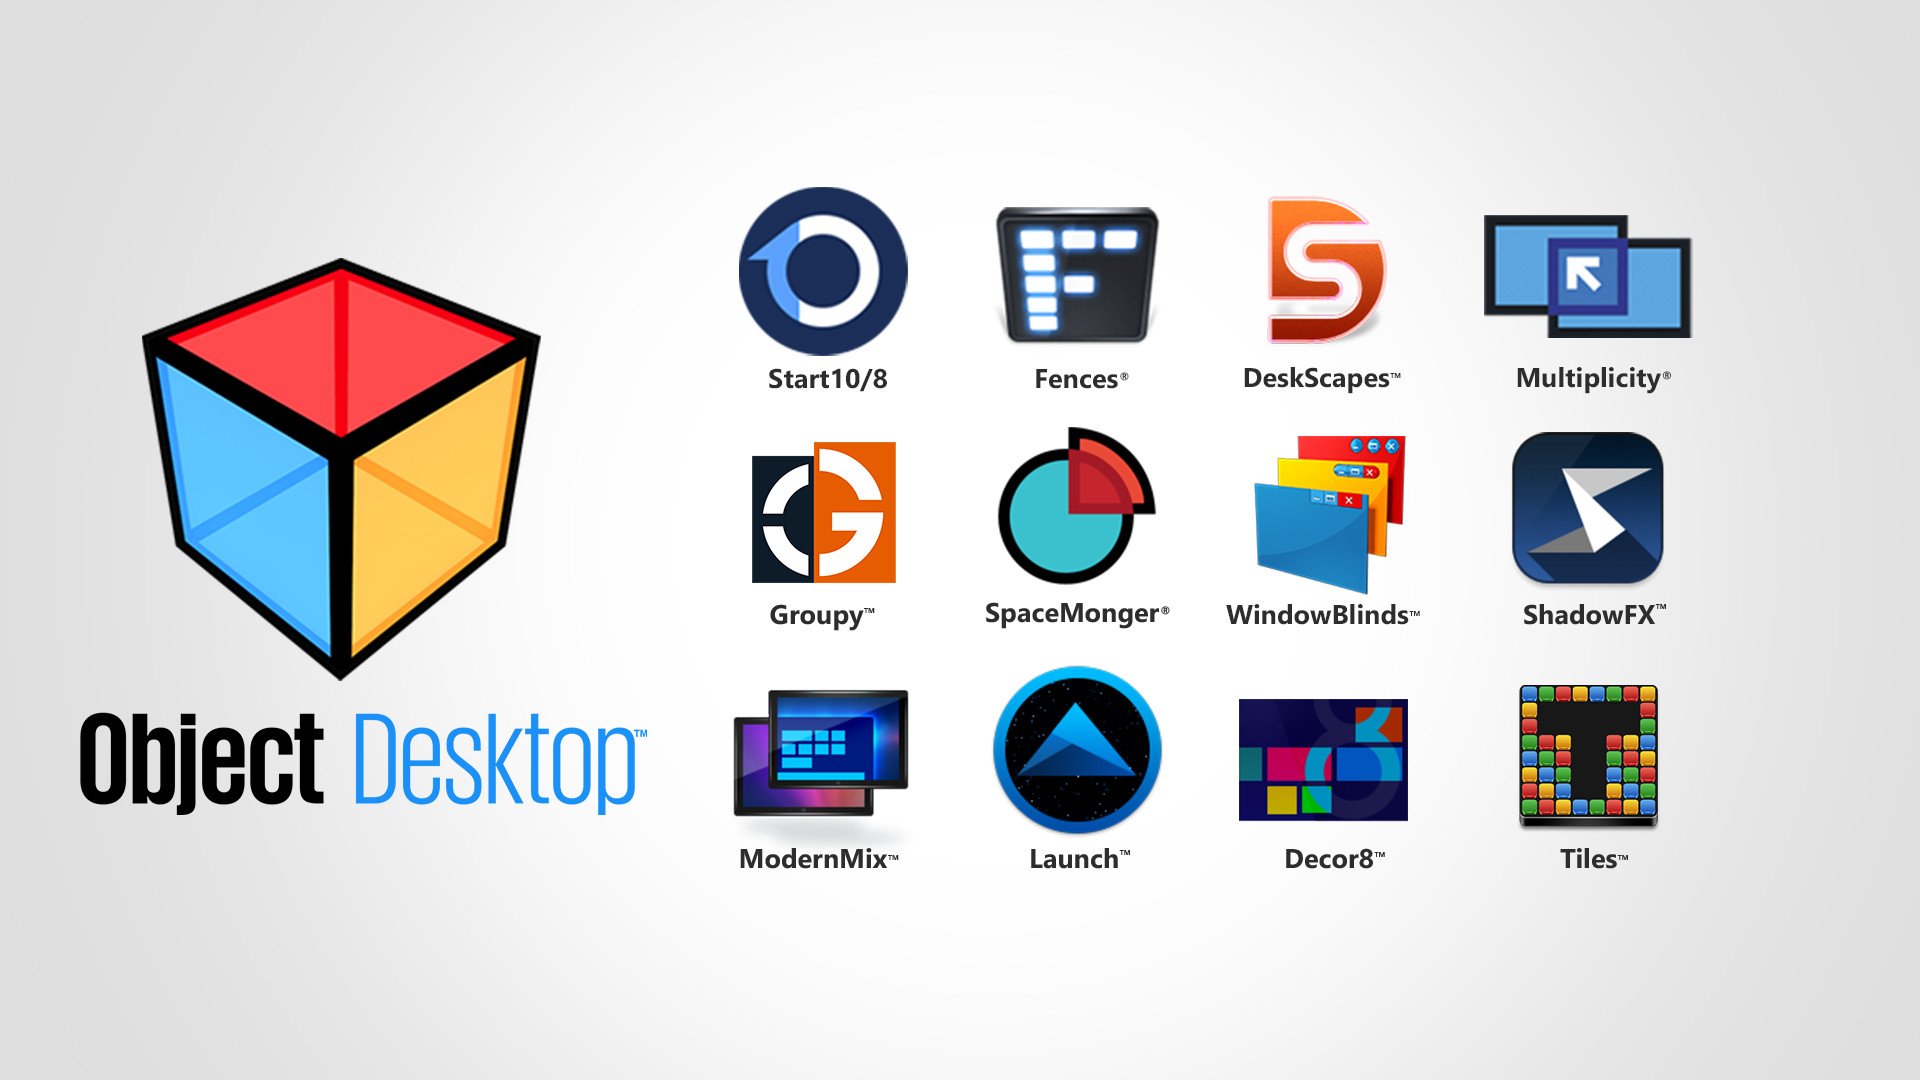 object-desktop-2018-logos.jpg